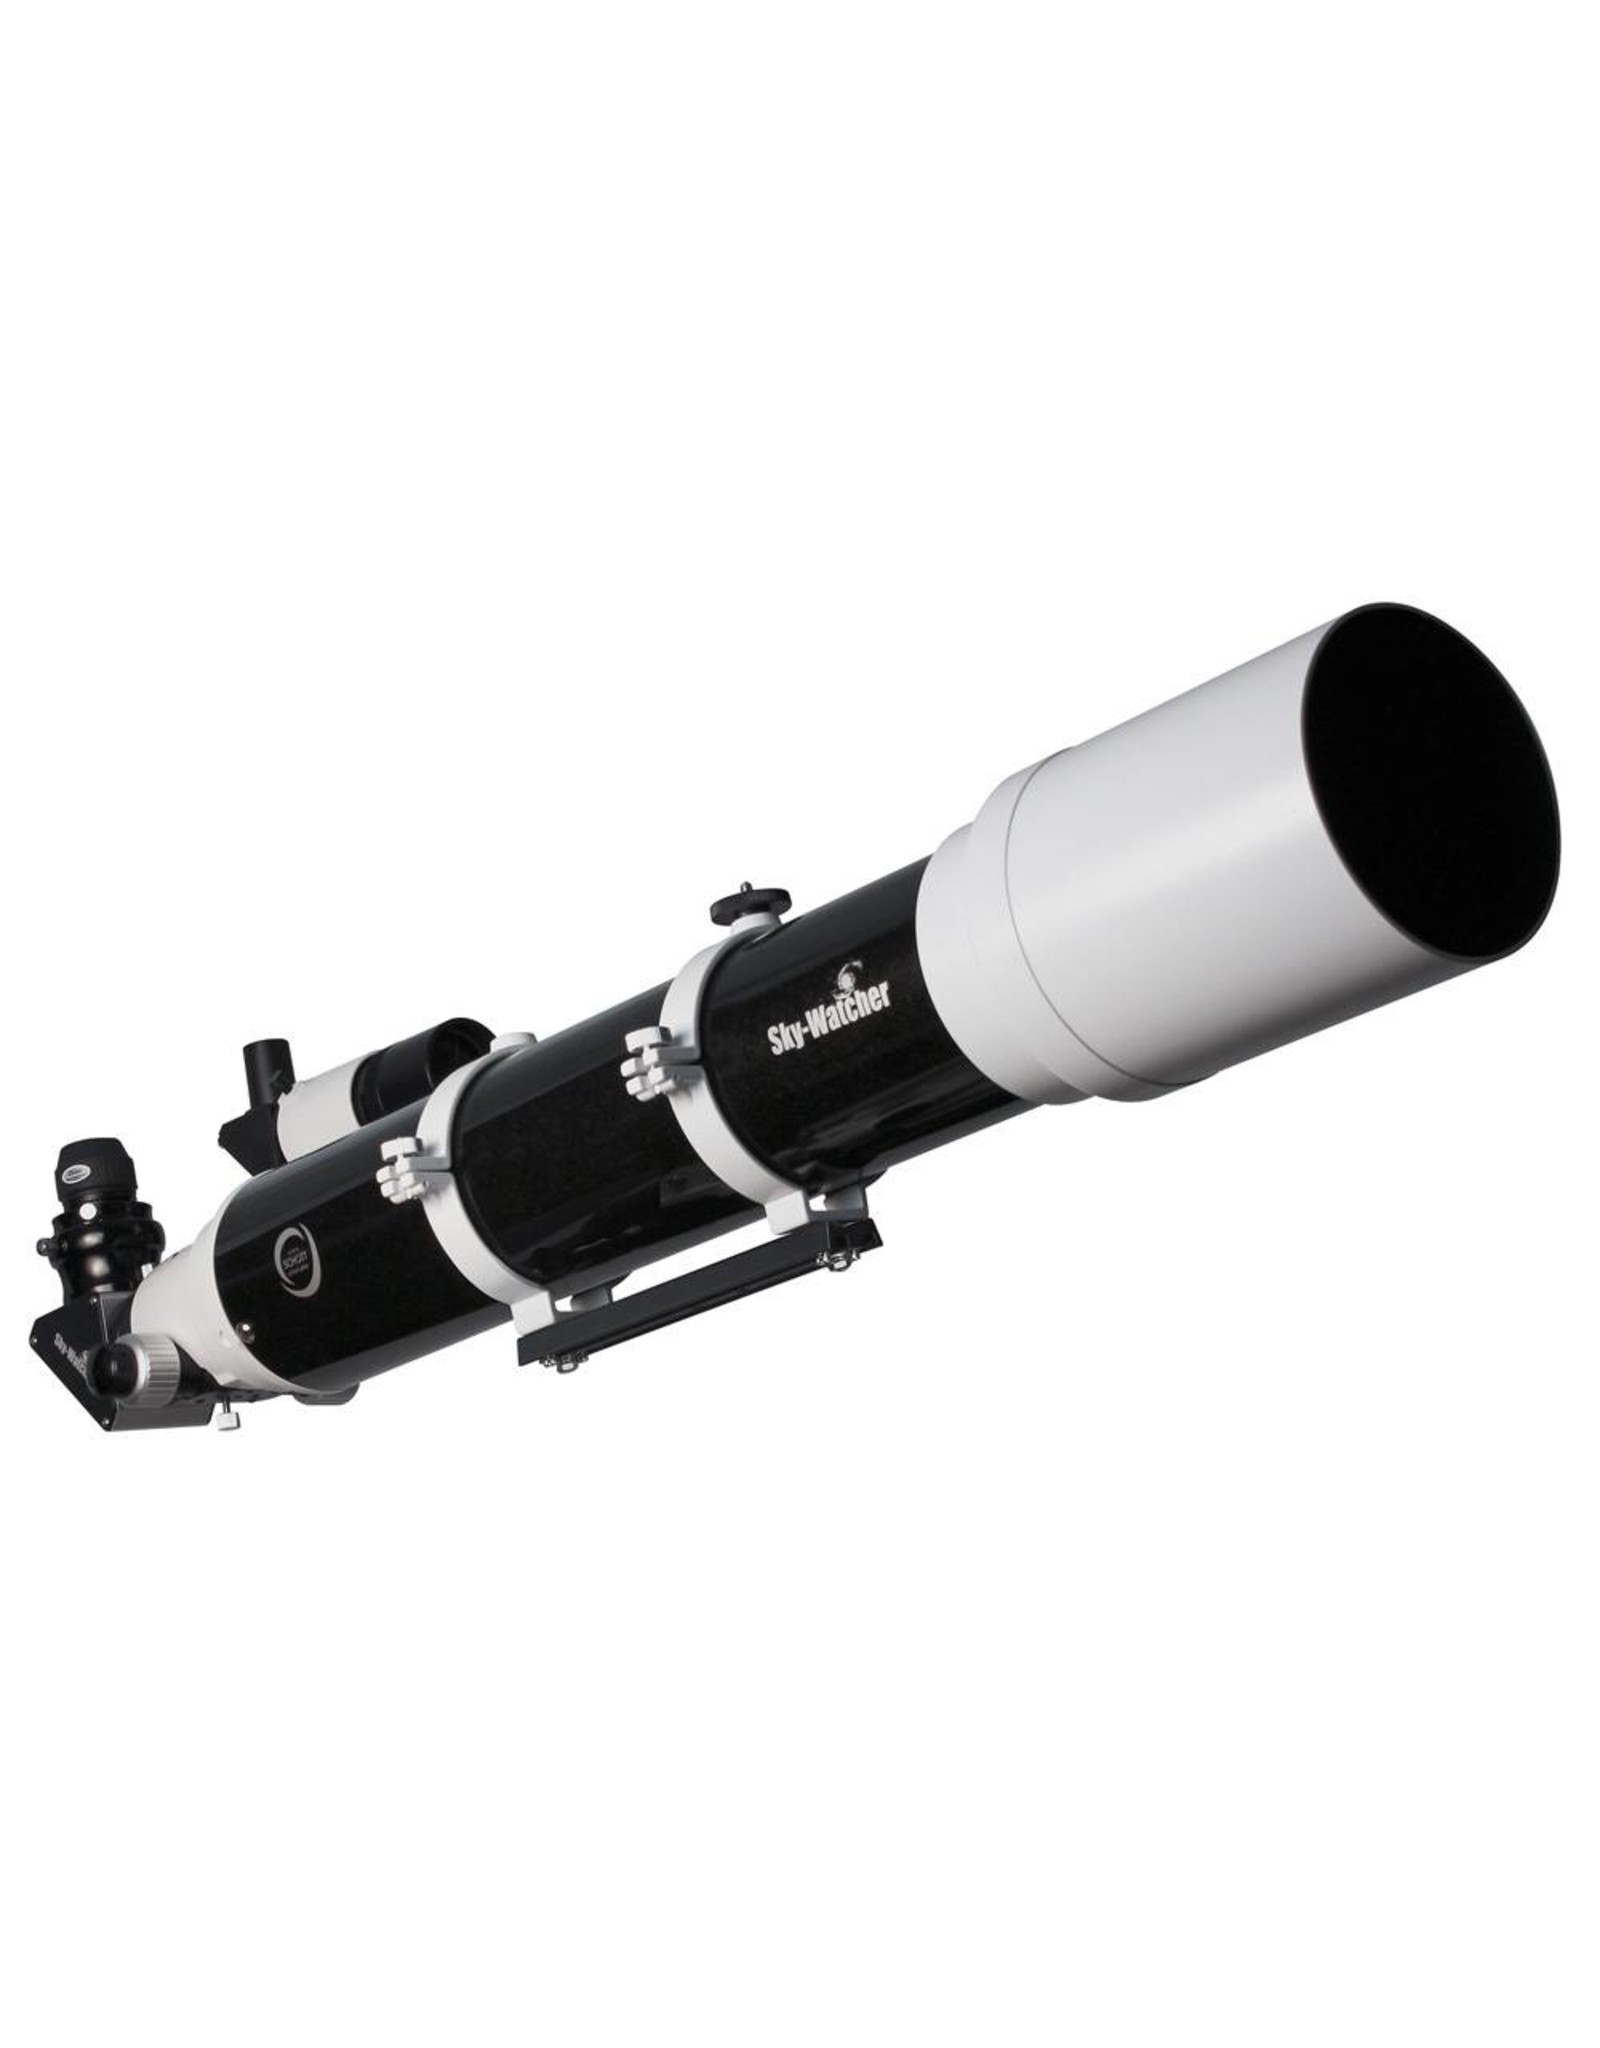 Sky-Watcher Sky-Watcher Evostar 120mm Doublet APO Refractor